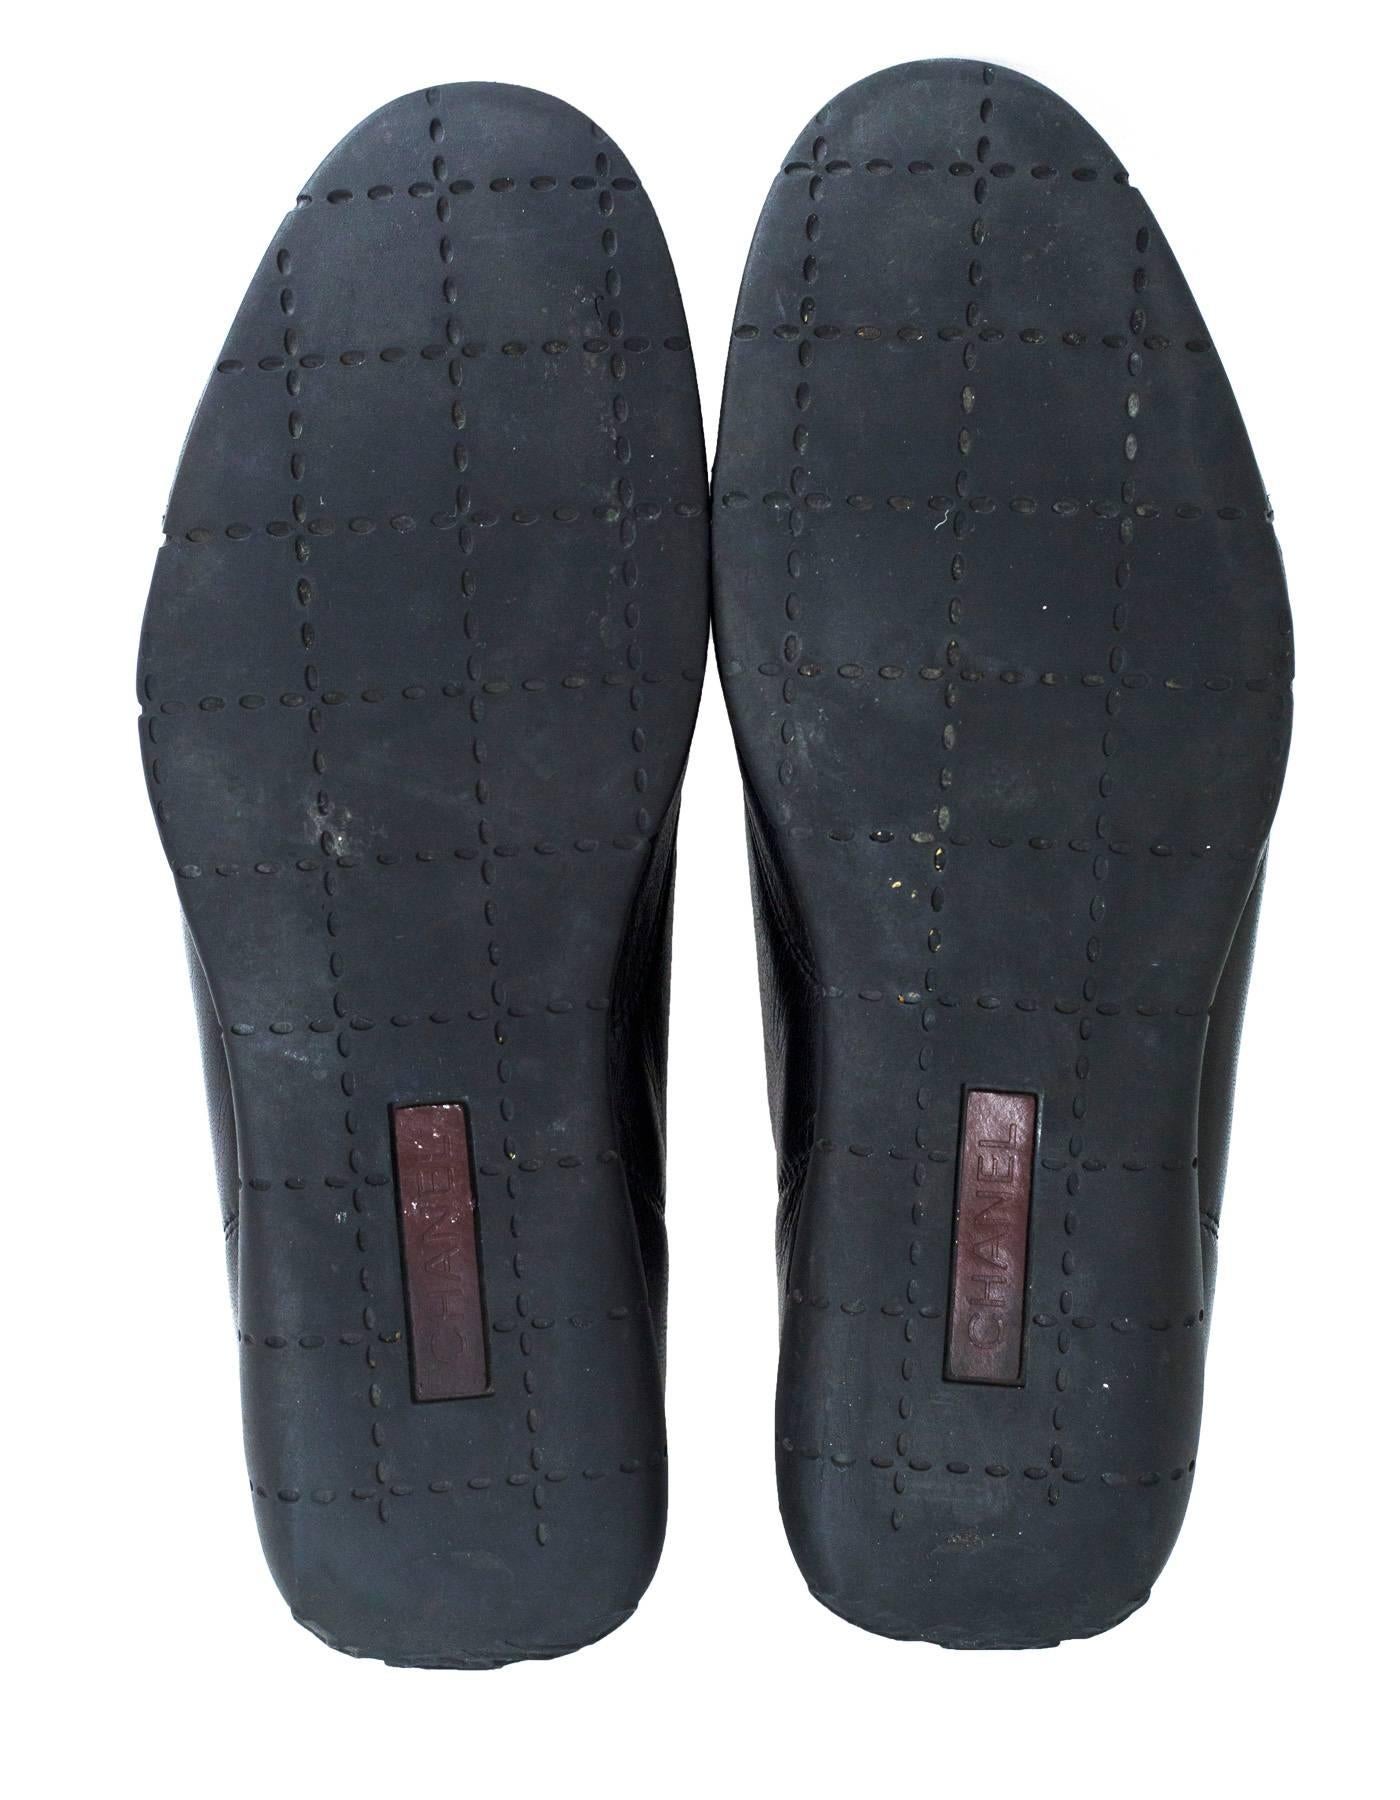 Chanel Black Leather Zipper Sneaker Flats Sz 38.5 1